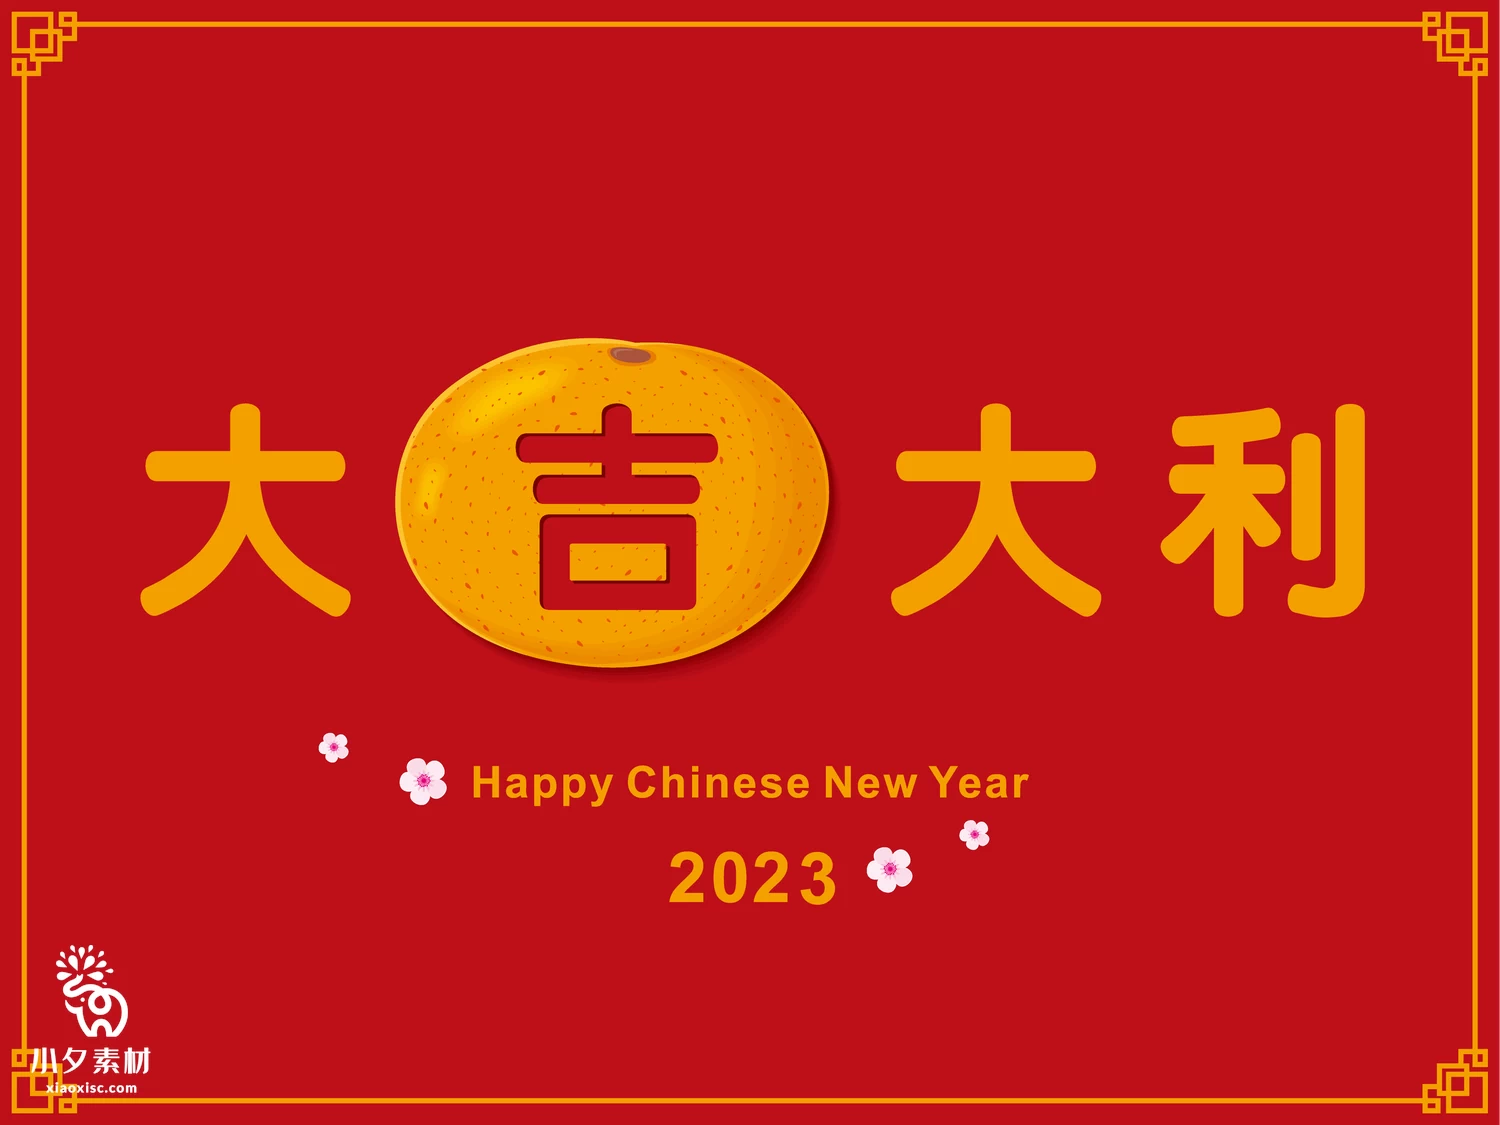 2023年兔年恭贺新春新年快乐喜庆节日宣传海报图片AI矢量设计素材【012】